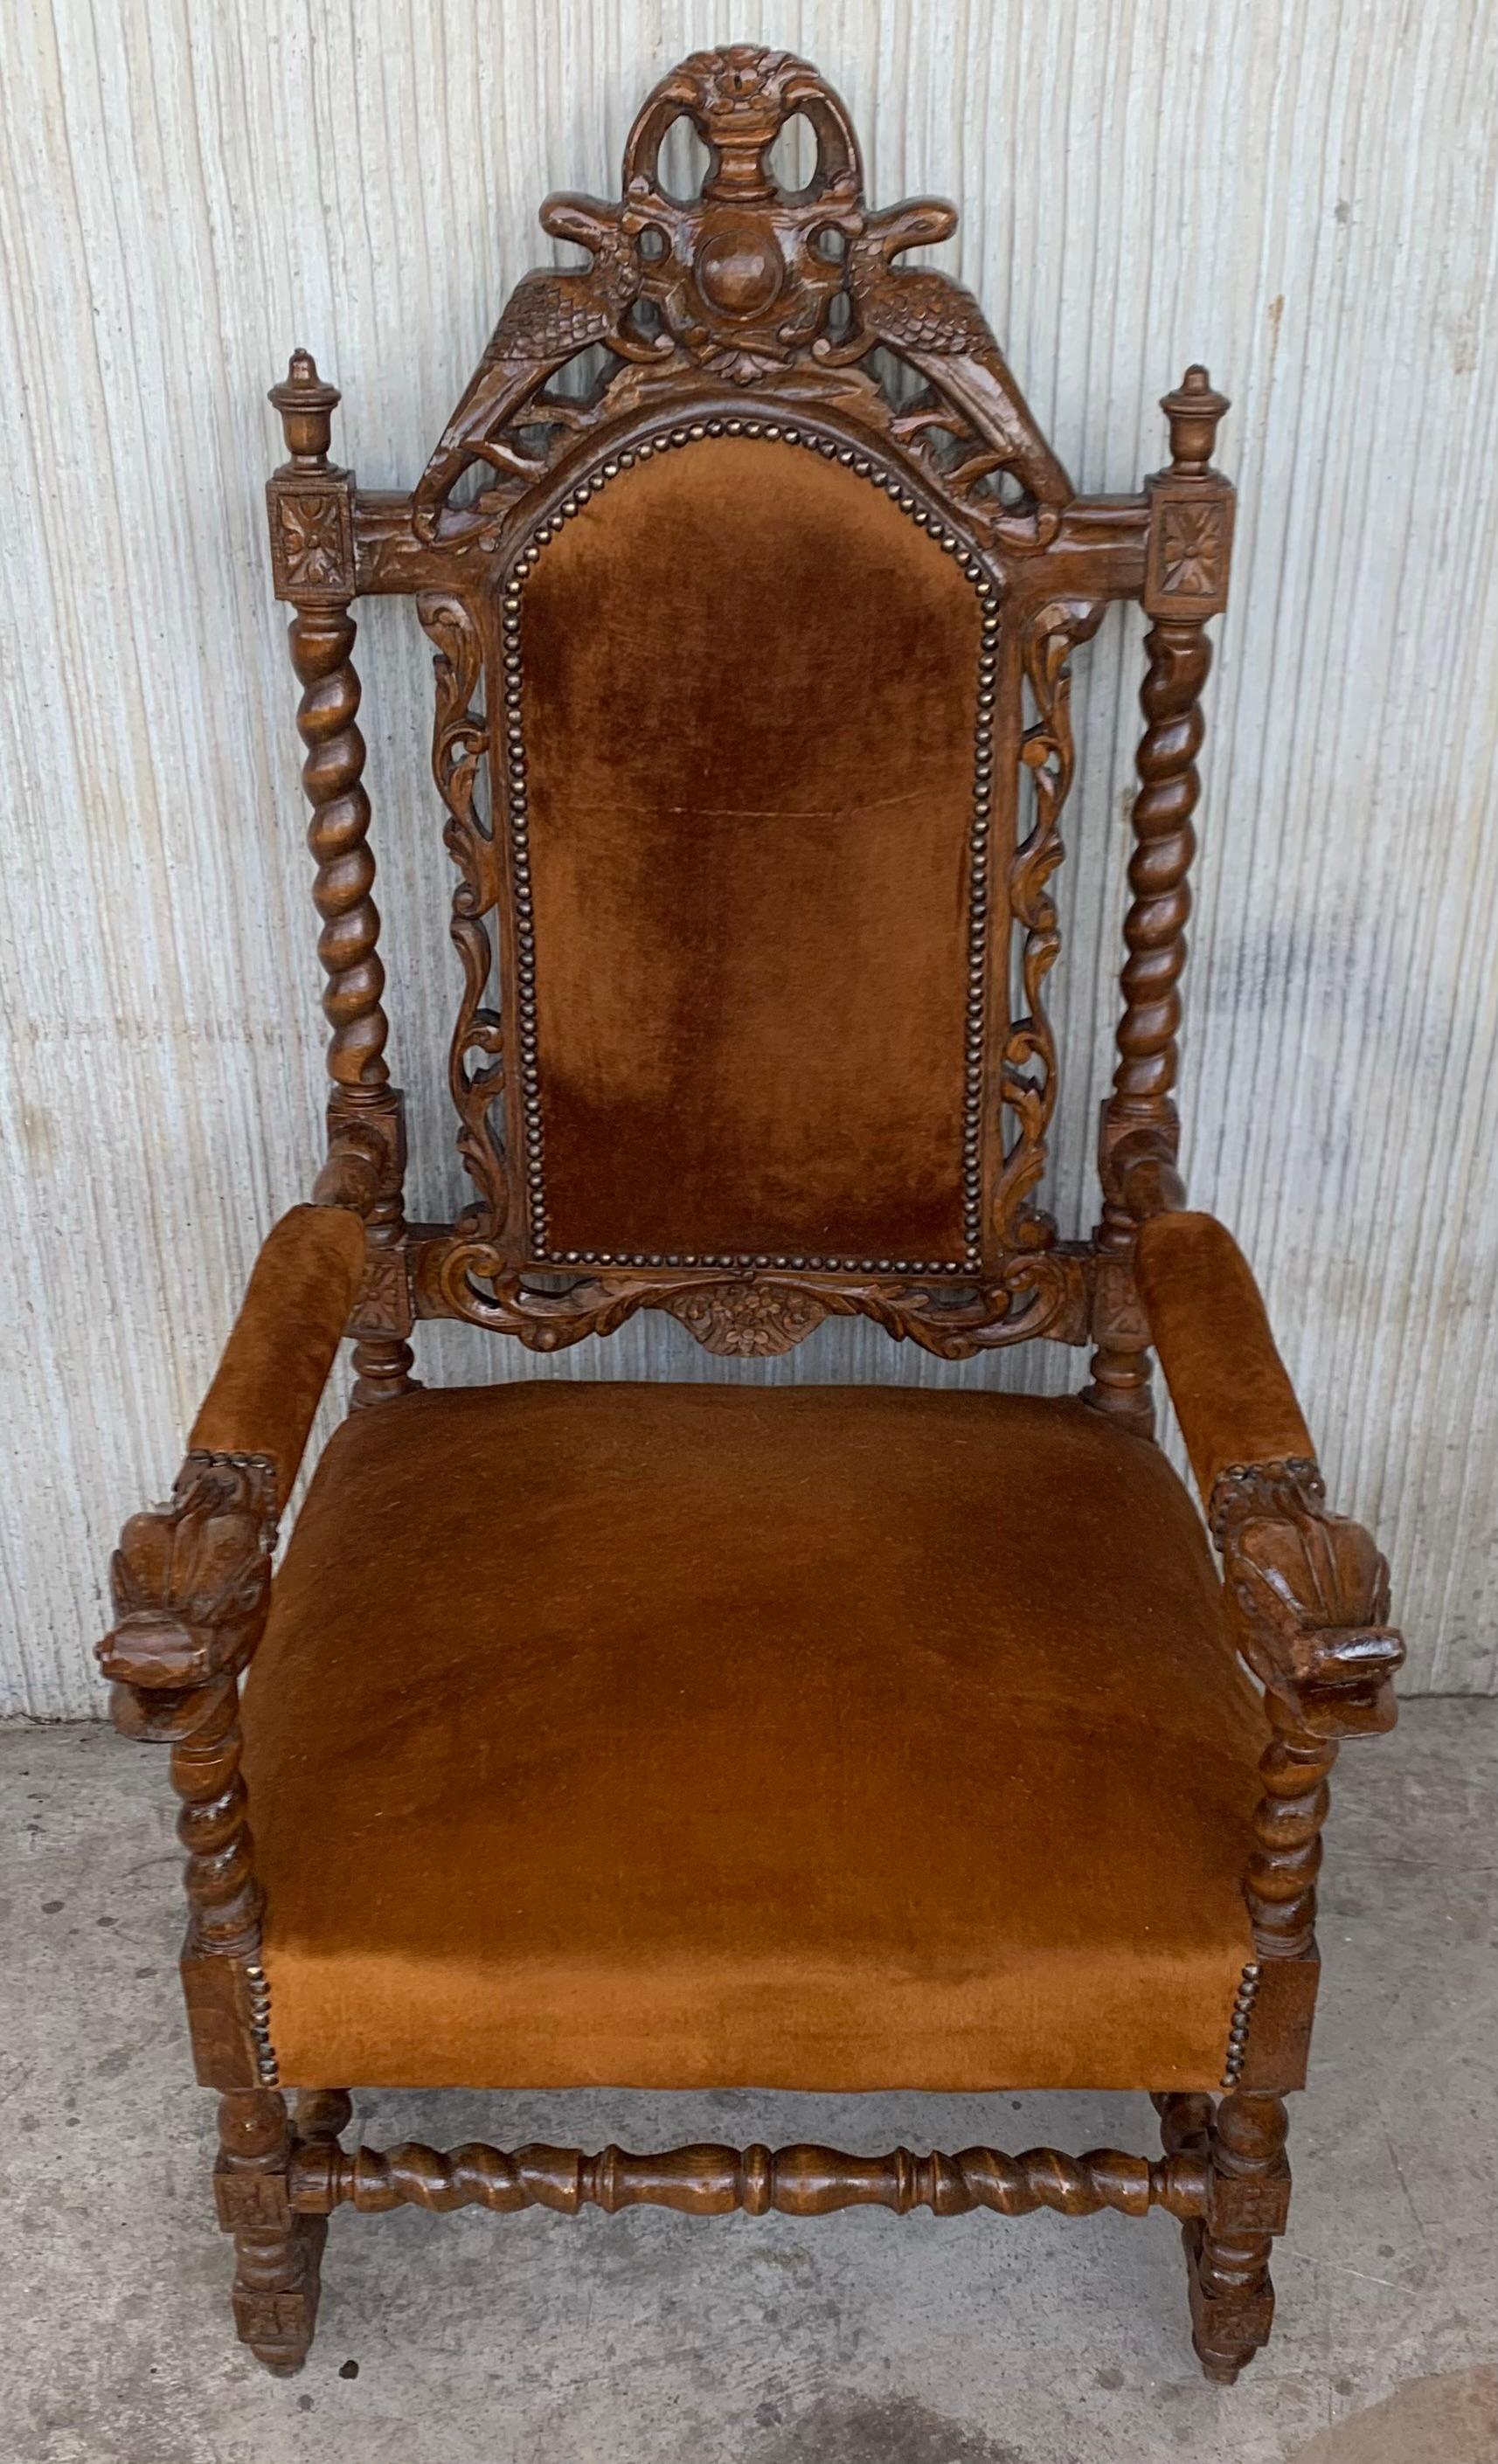 Paire de fauteuils sculptés de style Louis XVI, Espagne, années 1900
Bon état ancien avec quelques marques mineures dues à l'usage et à l'âge.
Magnifiques colonnes solomoniques à l'arrière, superbe cimier et impressionnants bras sculptés.
Velours